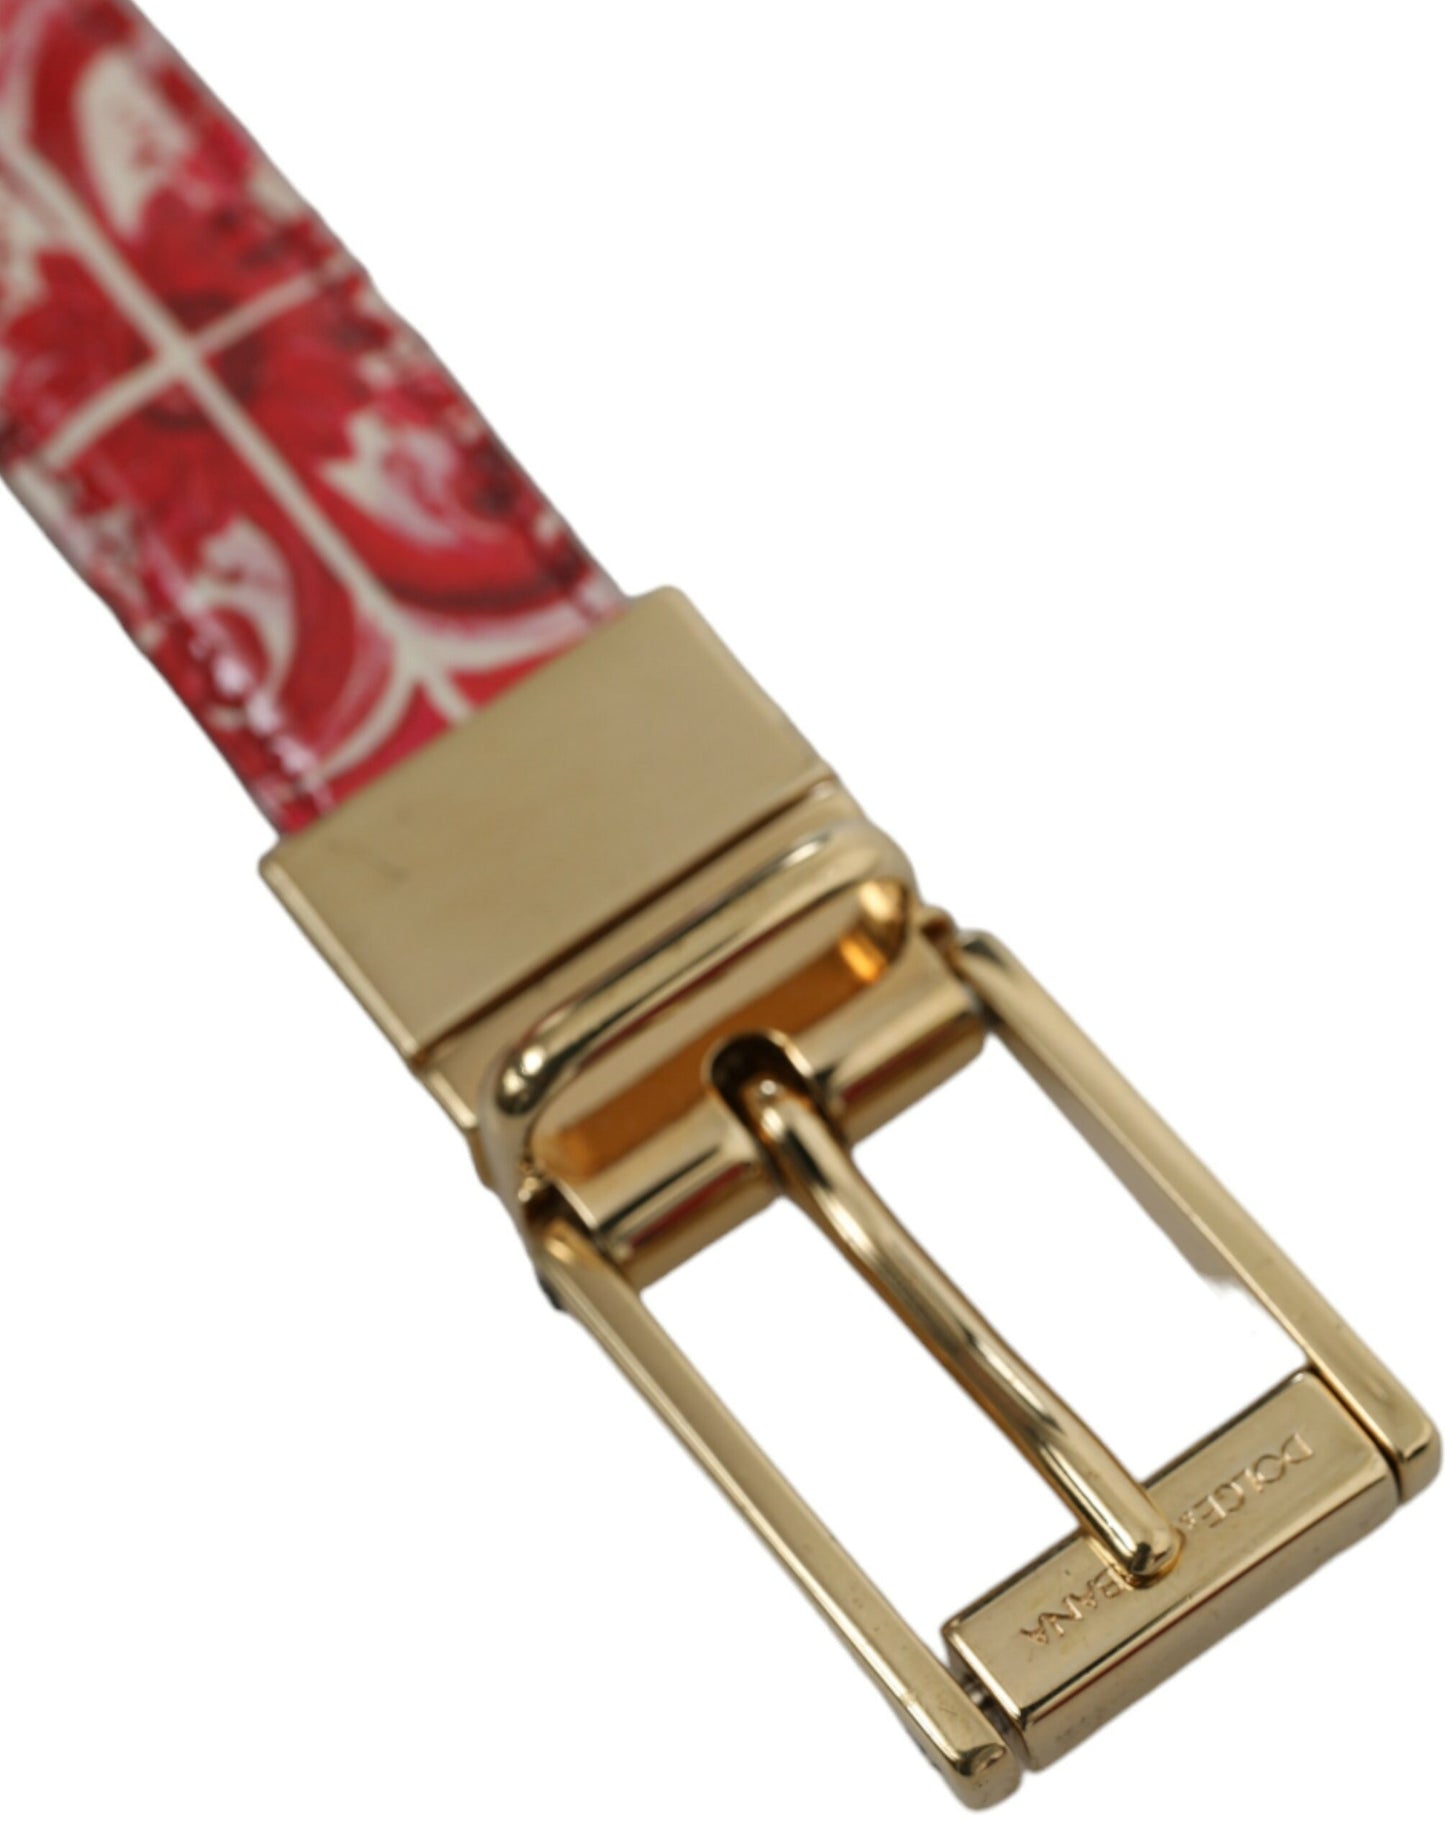 Elegant Red Calfskin Waist Belt